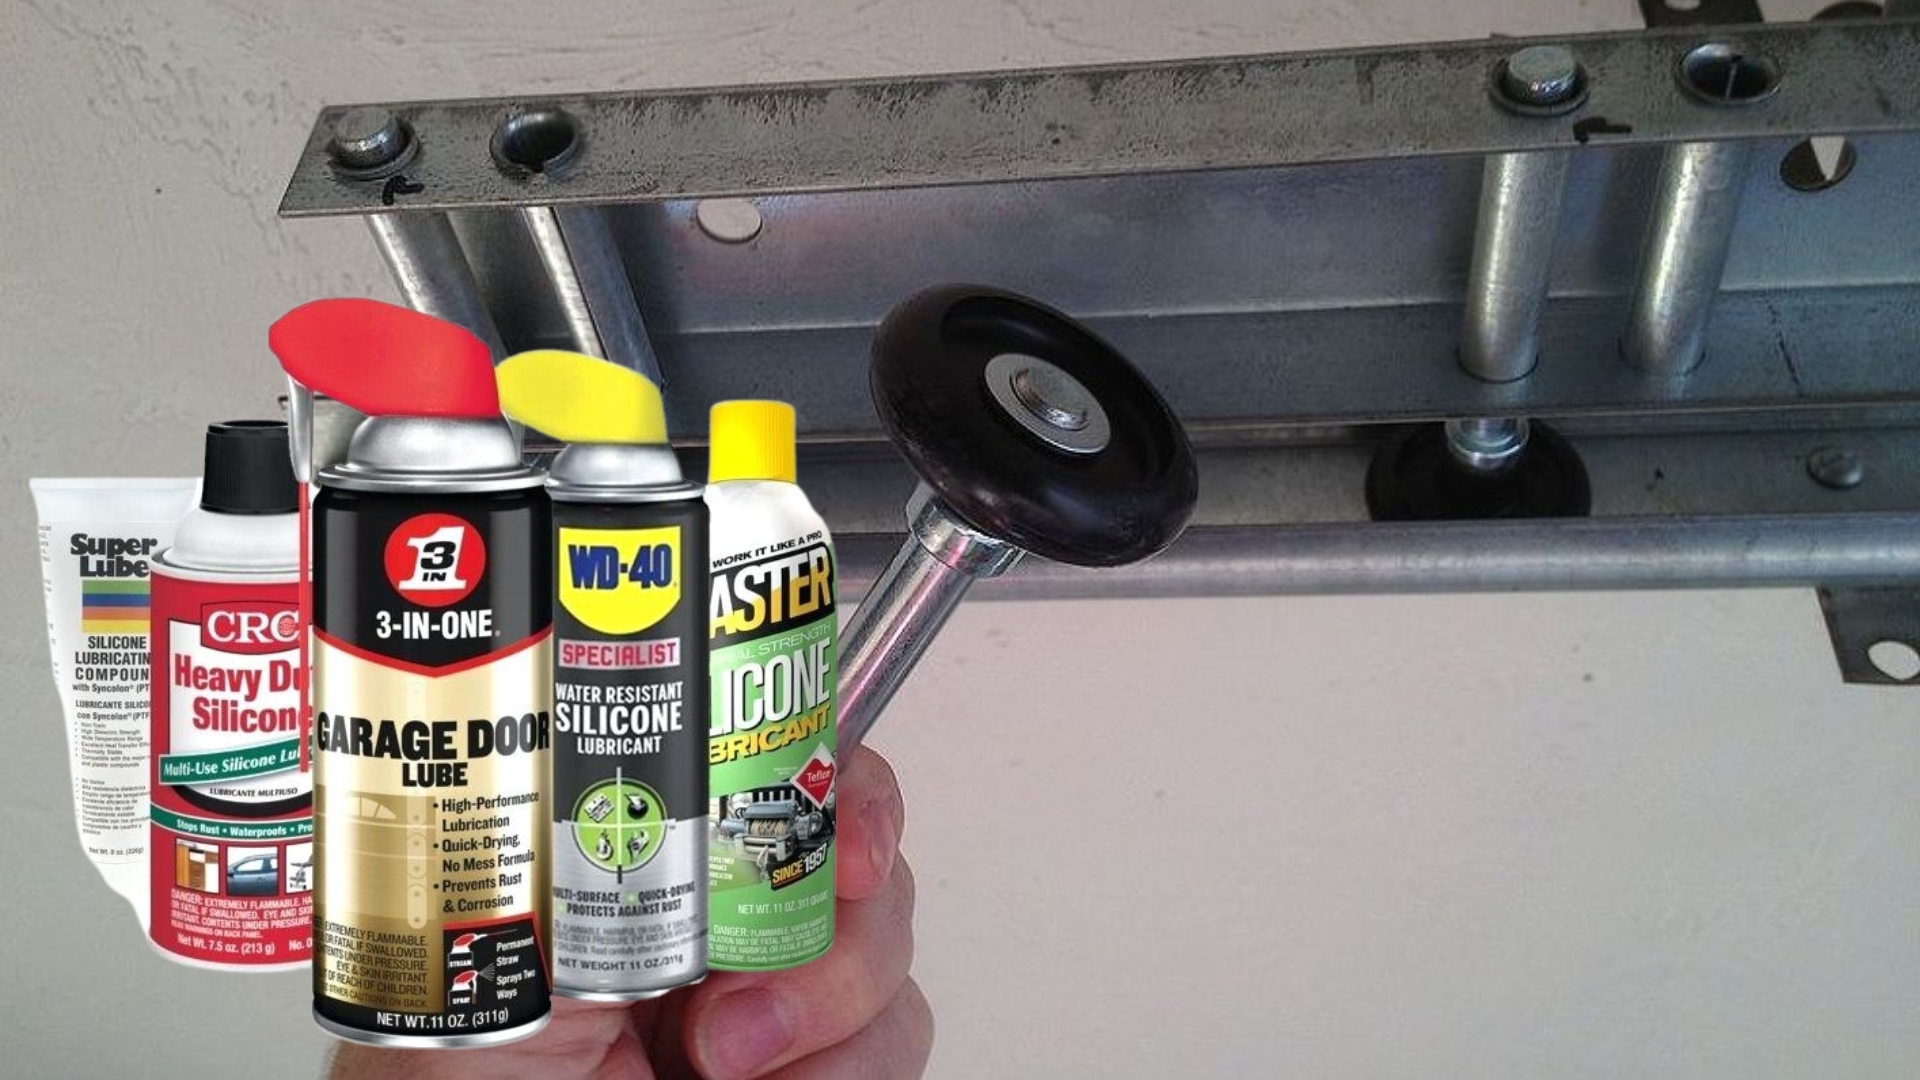 Garage door lubricants to lessen the noise from the garage door rollers